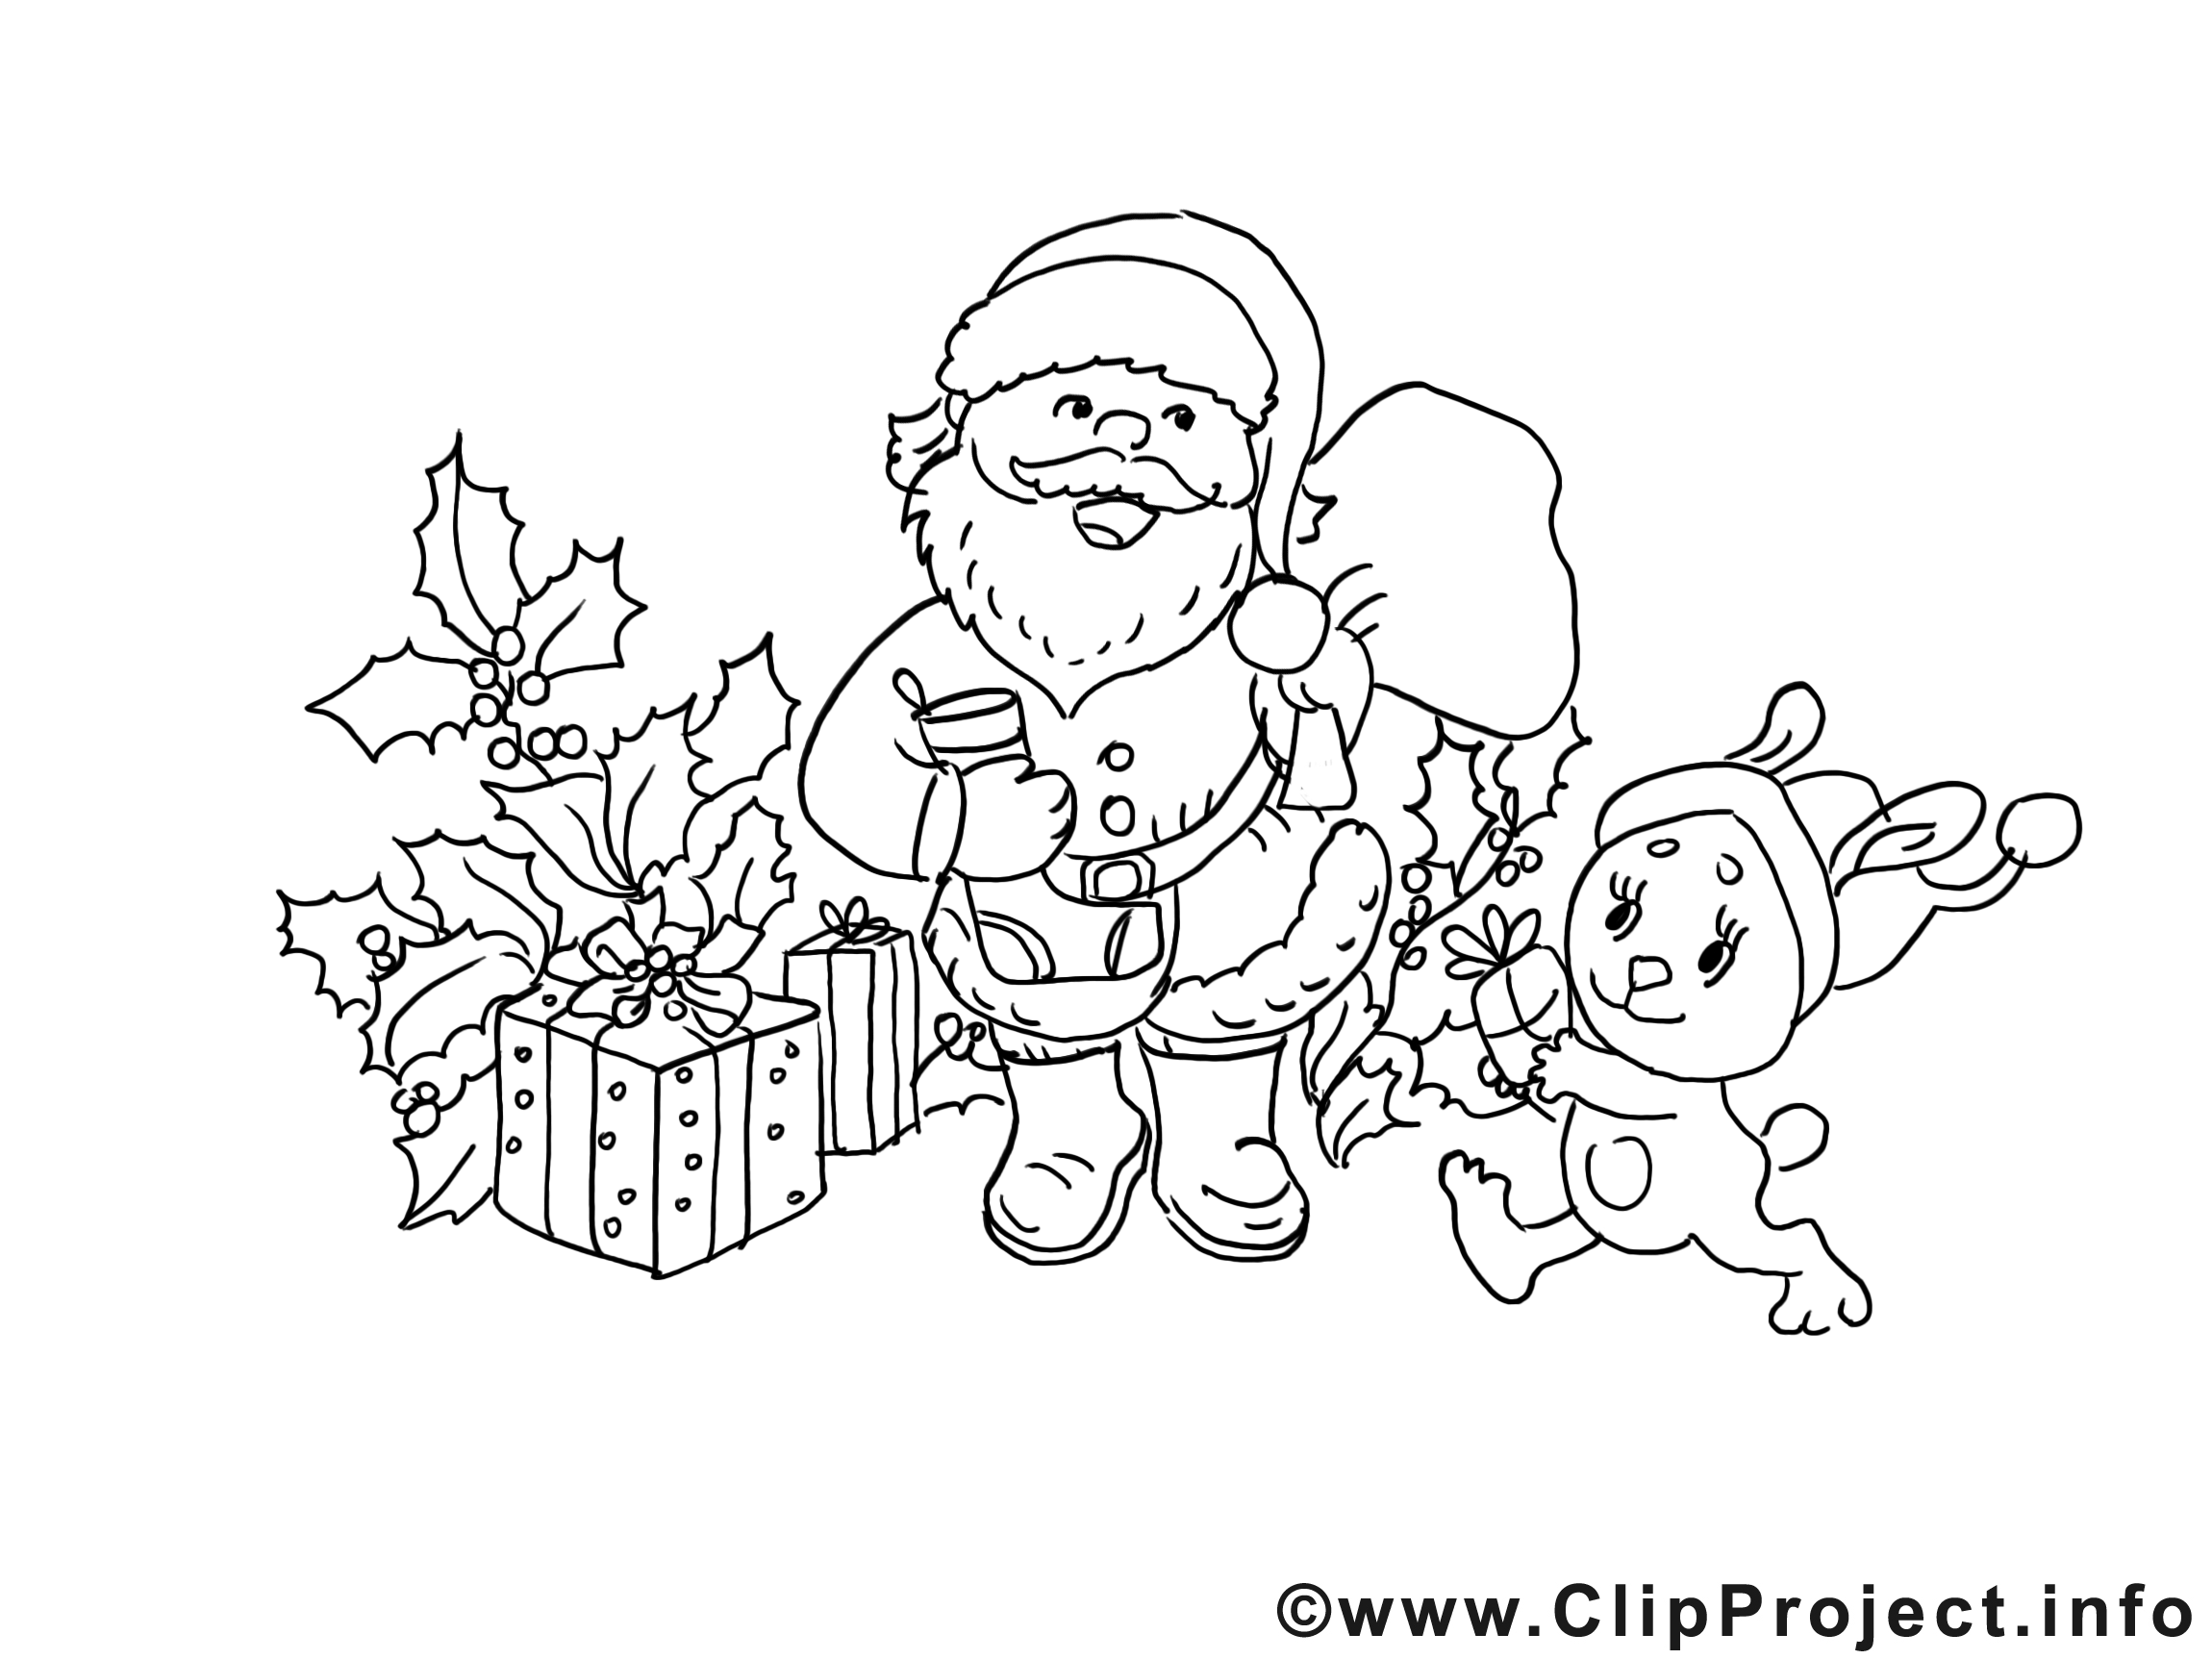 Cadeaux image – Noël images à colorier